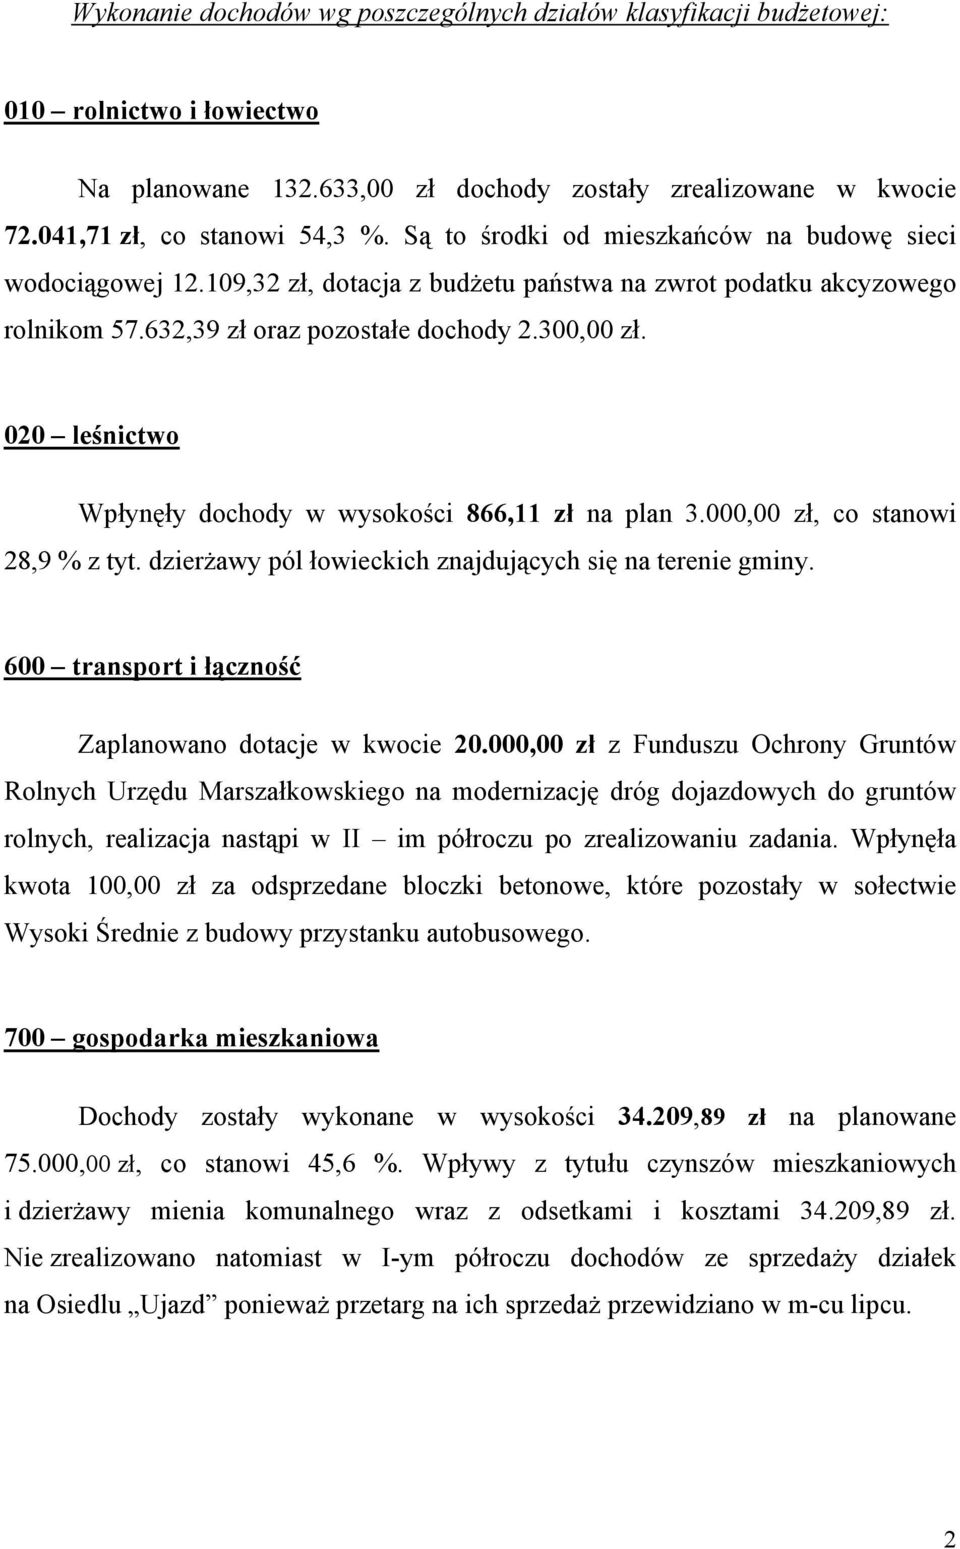 020 leśnictwo Wpłynęły dochody w wysokości 866,11 zł na plan 3.000,00 zł, co stanowi 28,9 % z tyt. dzierżawy pól łowieckich znajdujących się na terenie gminy.